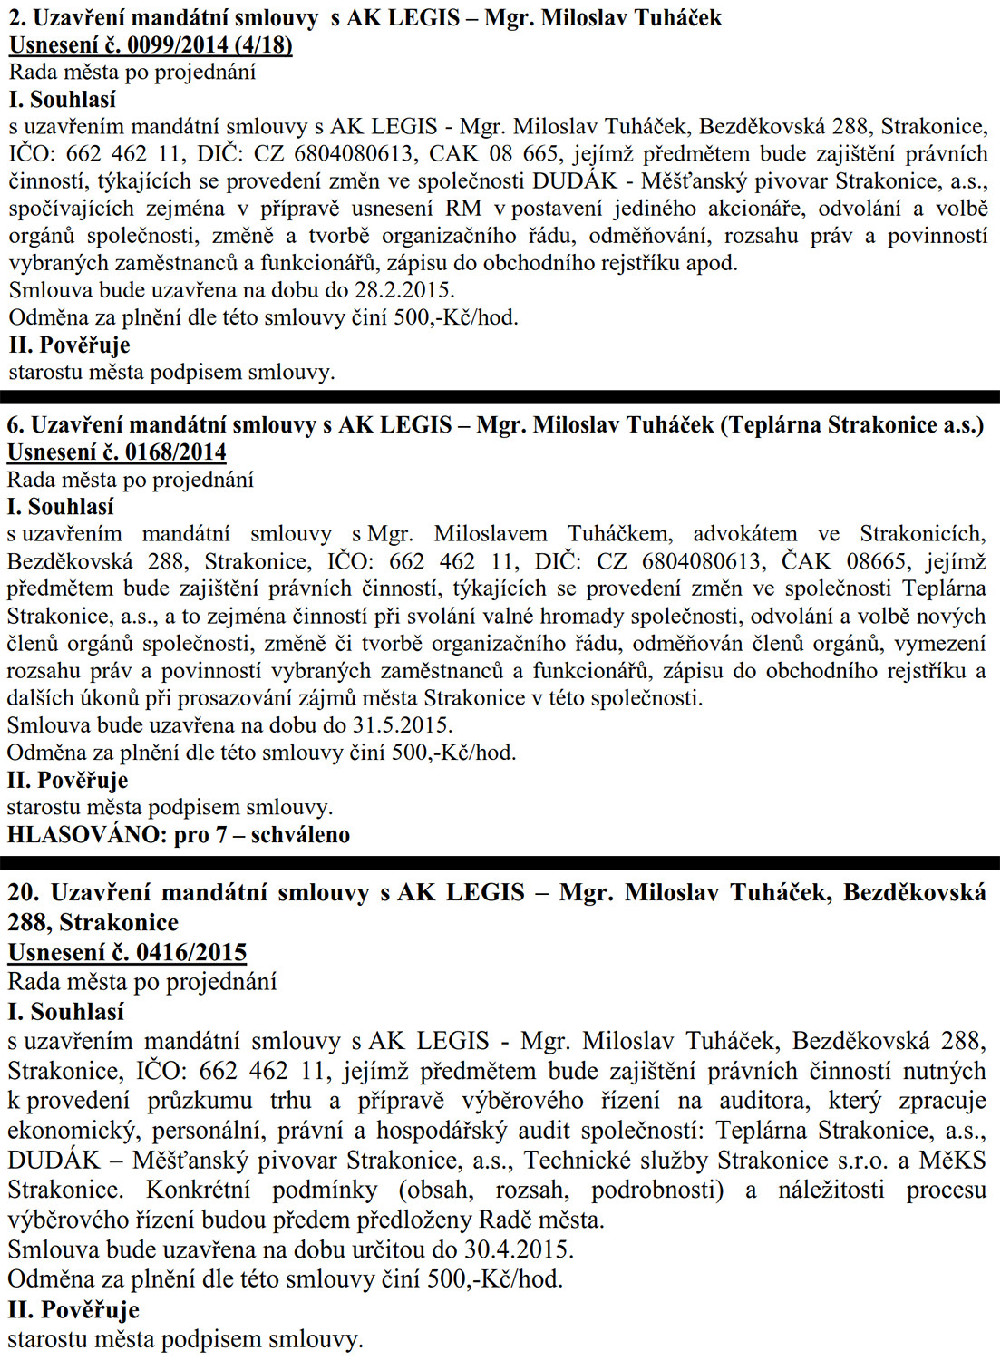 Přehled usnesení rady přijatých novým vedením města po říjnu 2014 týkající se poskytování právních služeb městu Miloslavem Tuháčkem